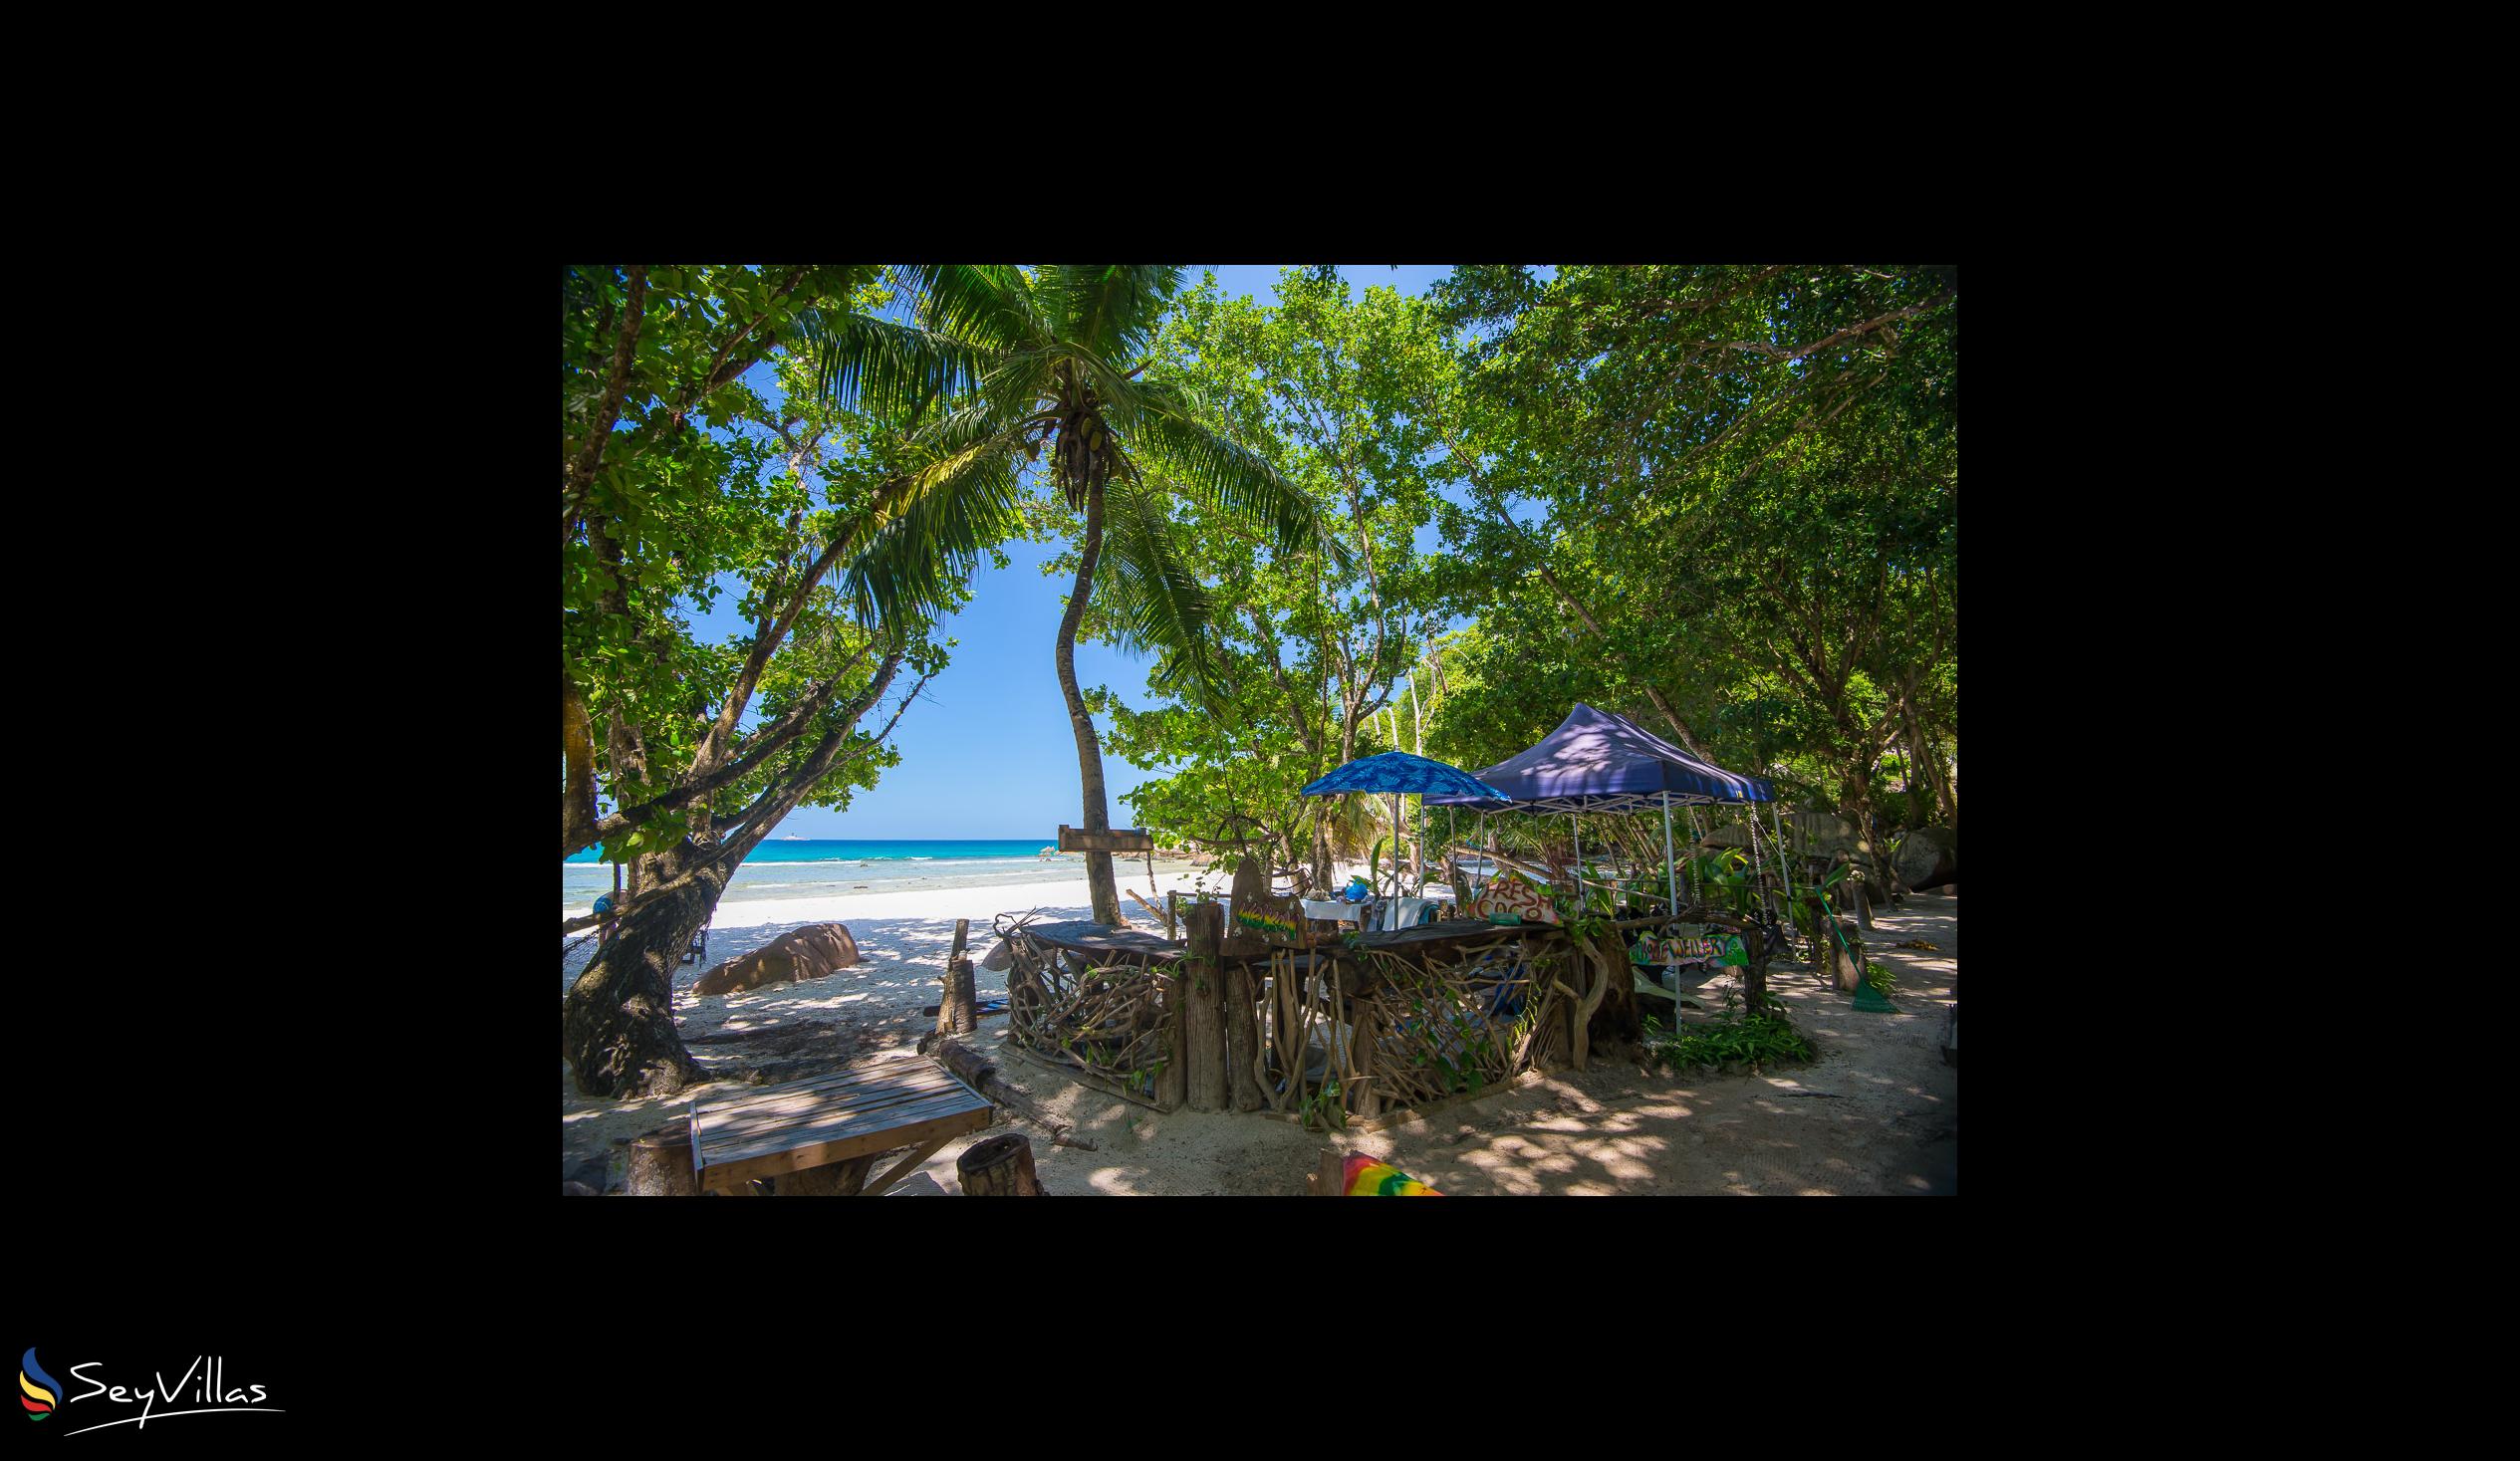 Photo 63: Le Nautique Luxury Waterfront Hotel - Location - La Digue (Seychelles)